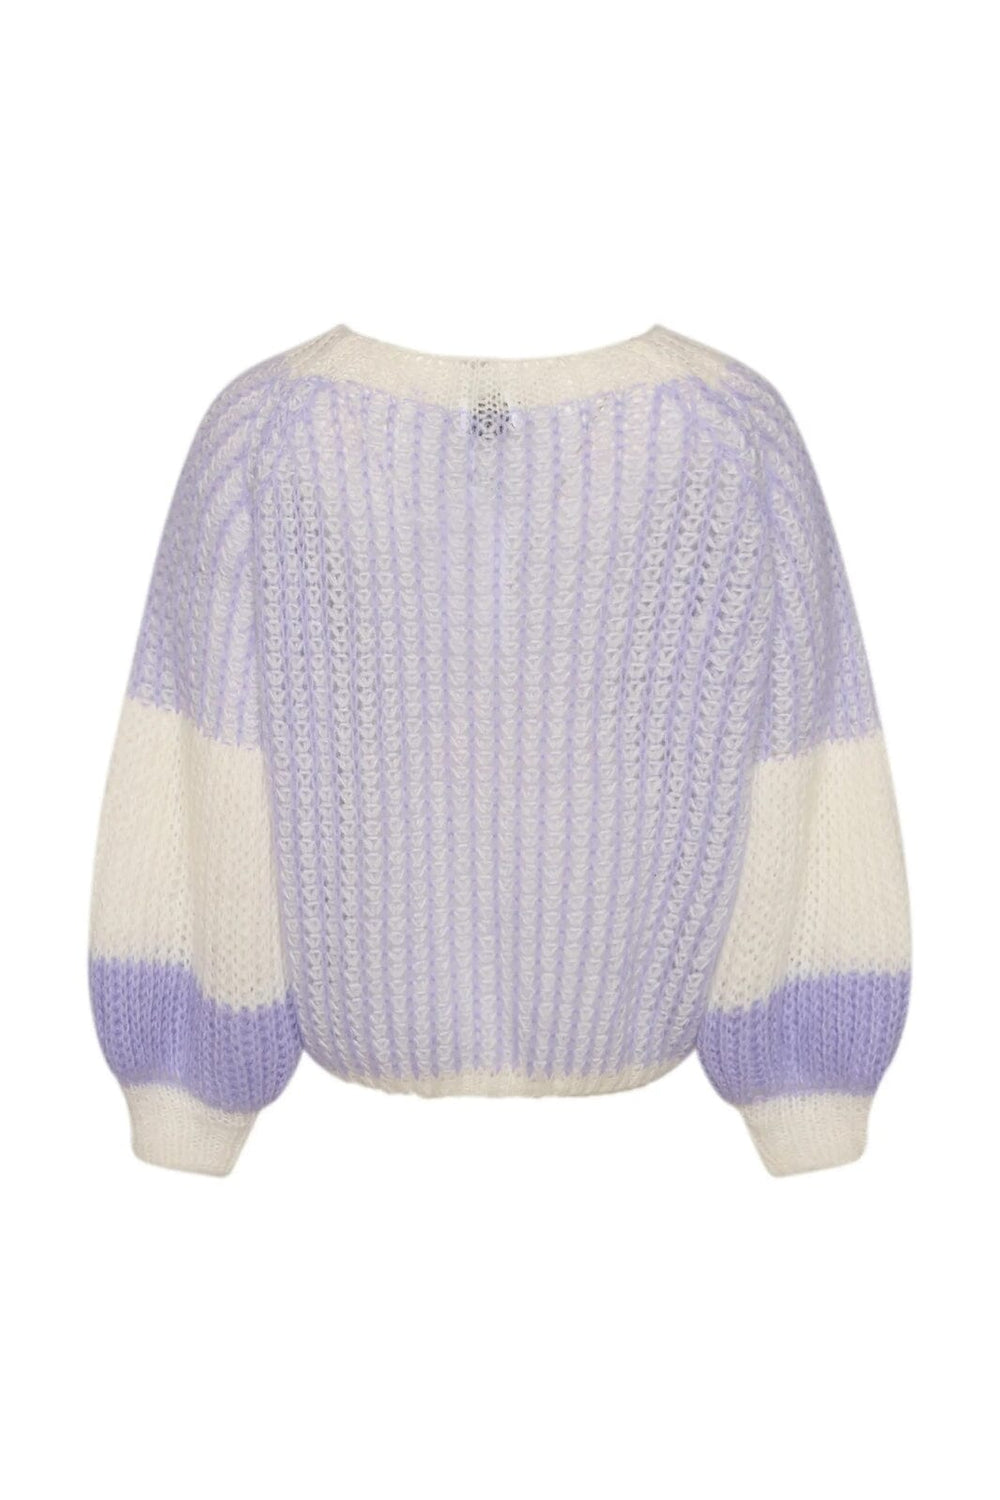 Noella - Liana Knit Sweater - Lavender/White Strikbluser 